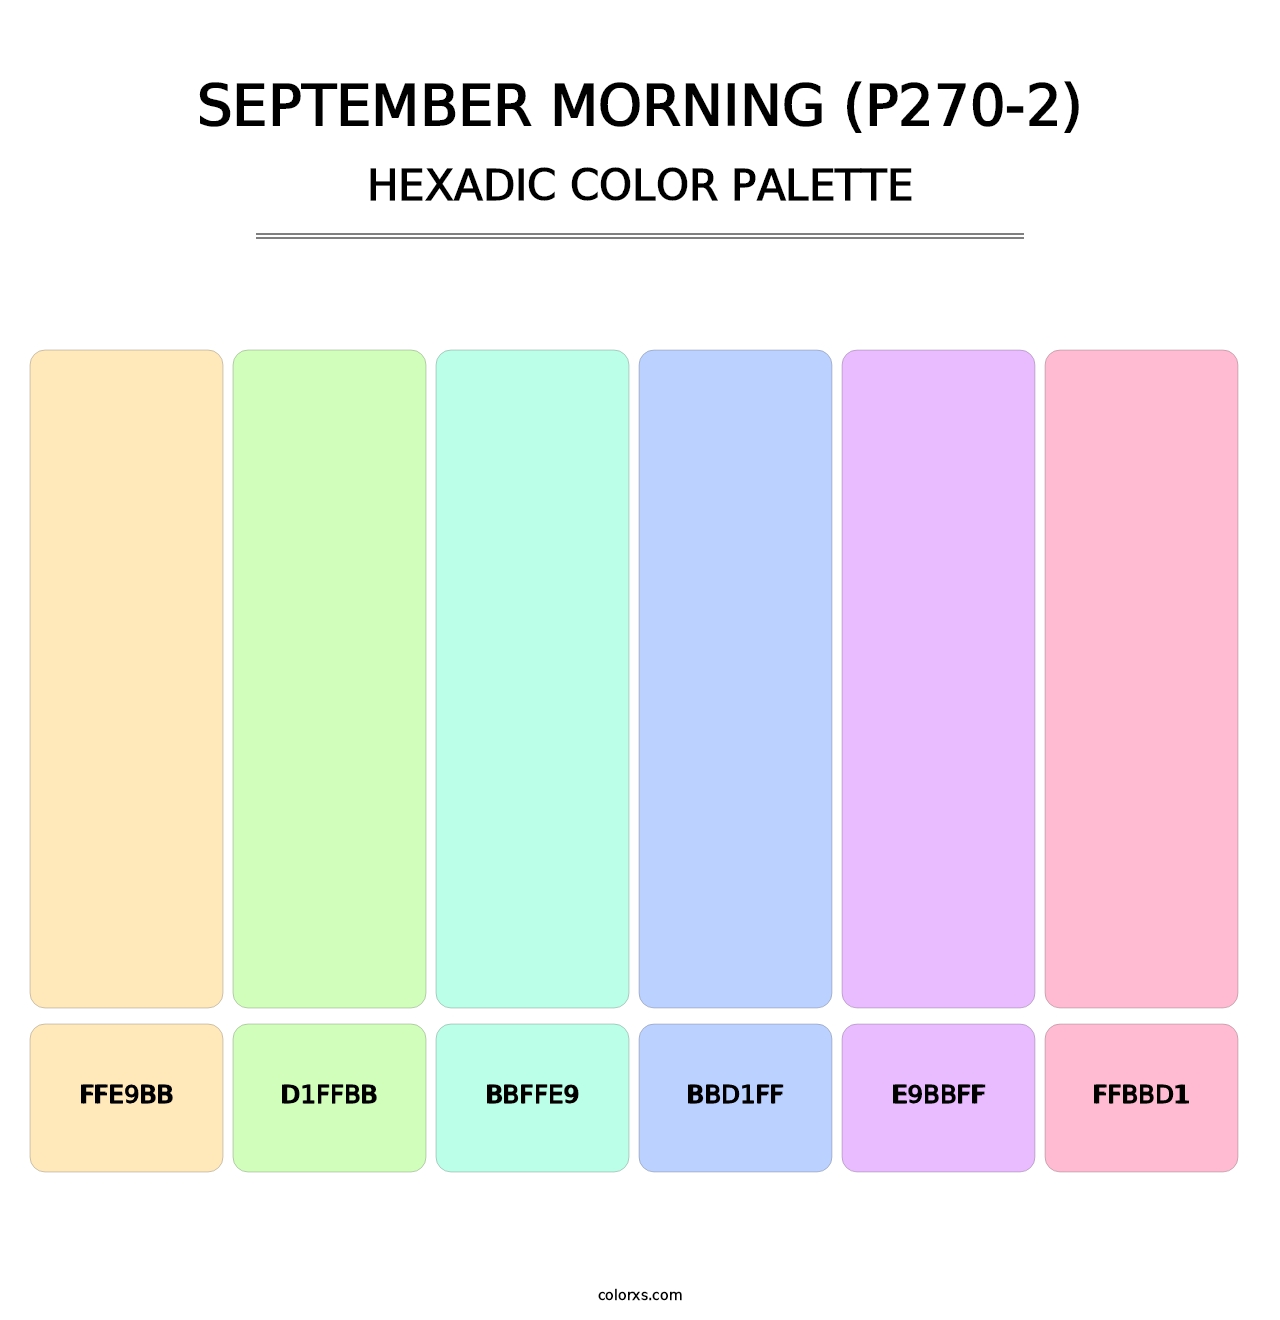 September Morning (P270-2) - Hexadic Color Palette